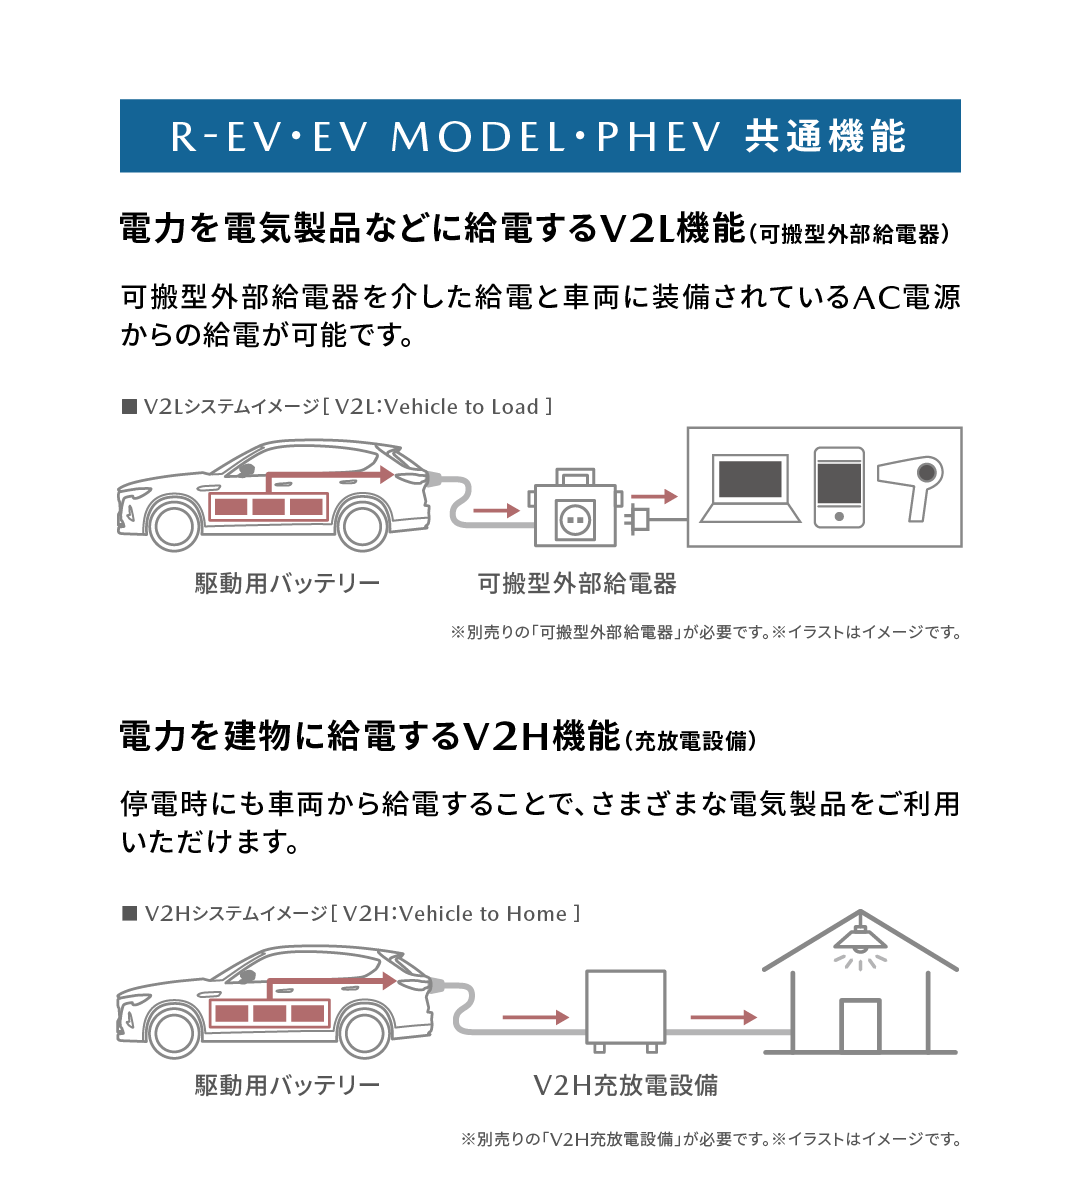 R-EV・EV MODEL・PHEV 共通機能